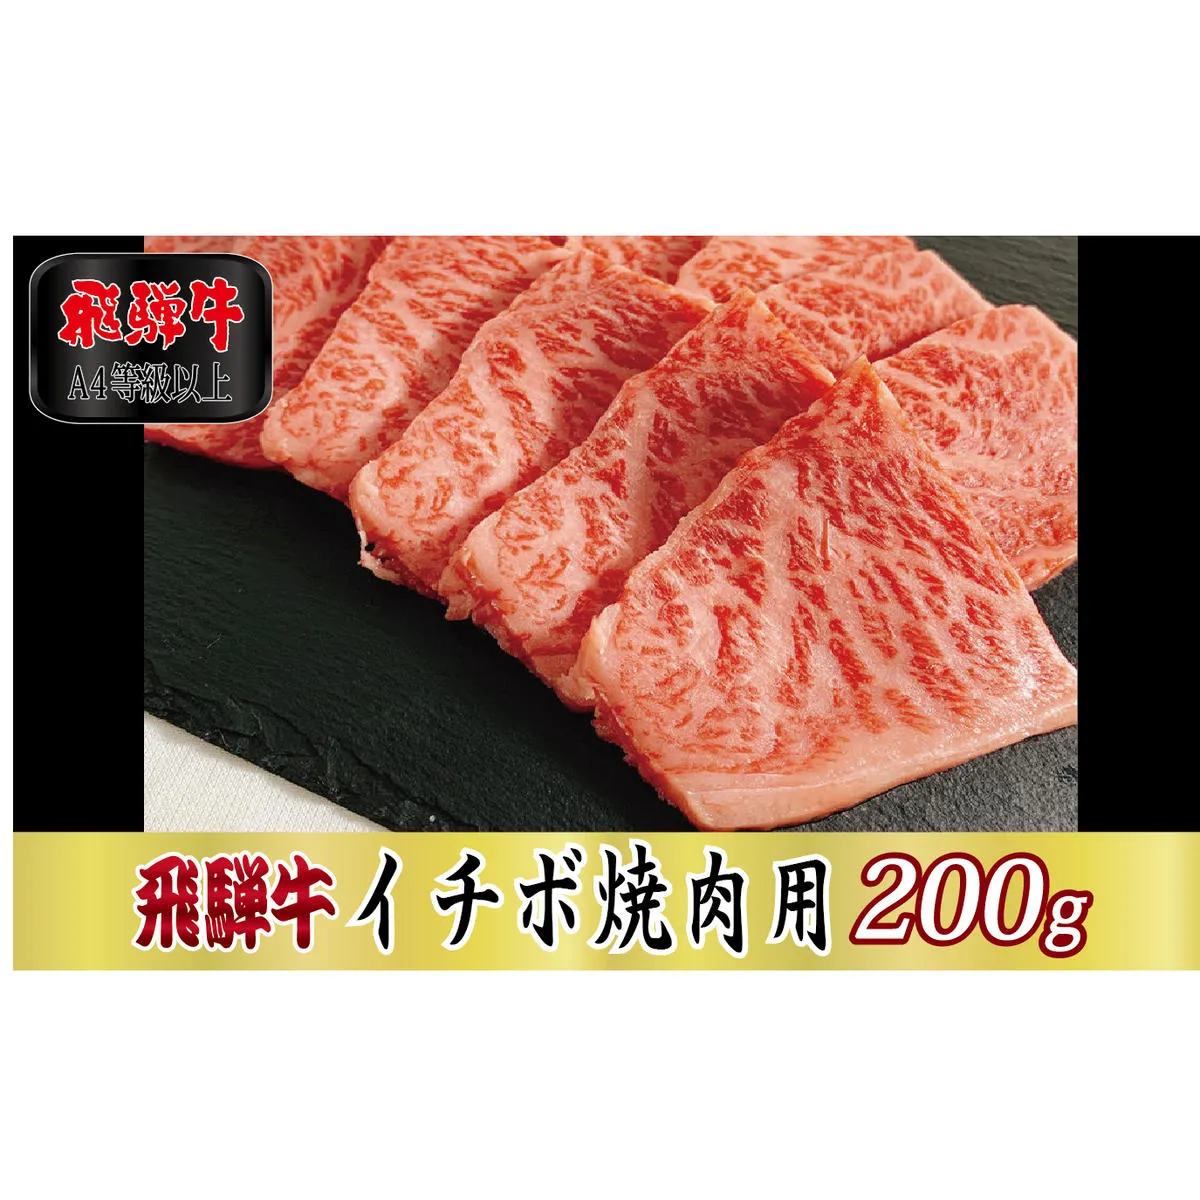 【A4等級以上】飛騨牛イチボ焼肉用200g